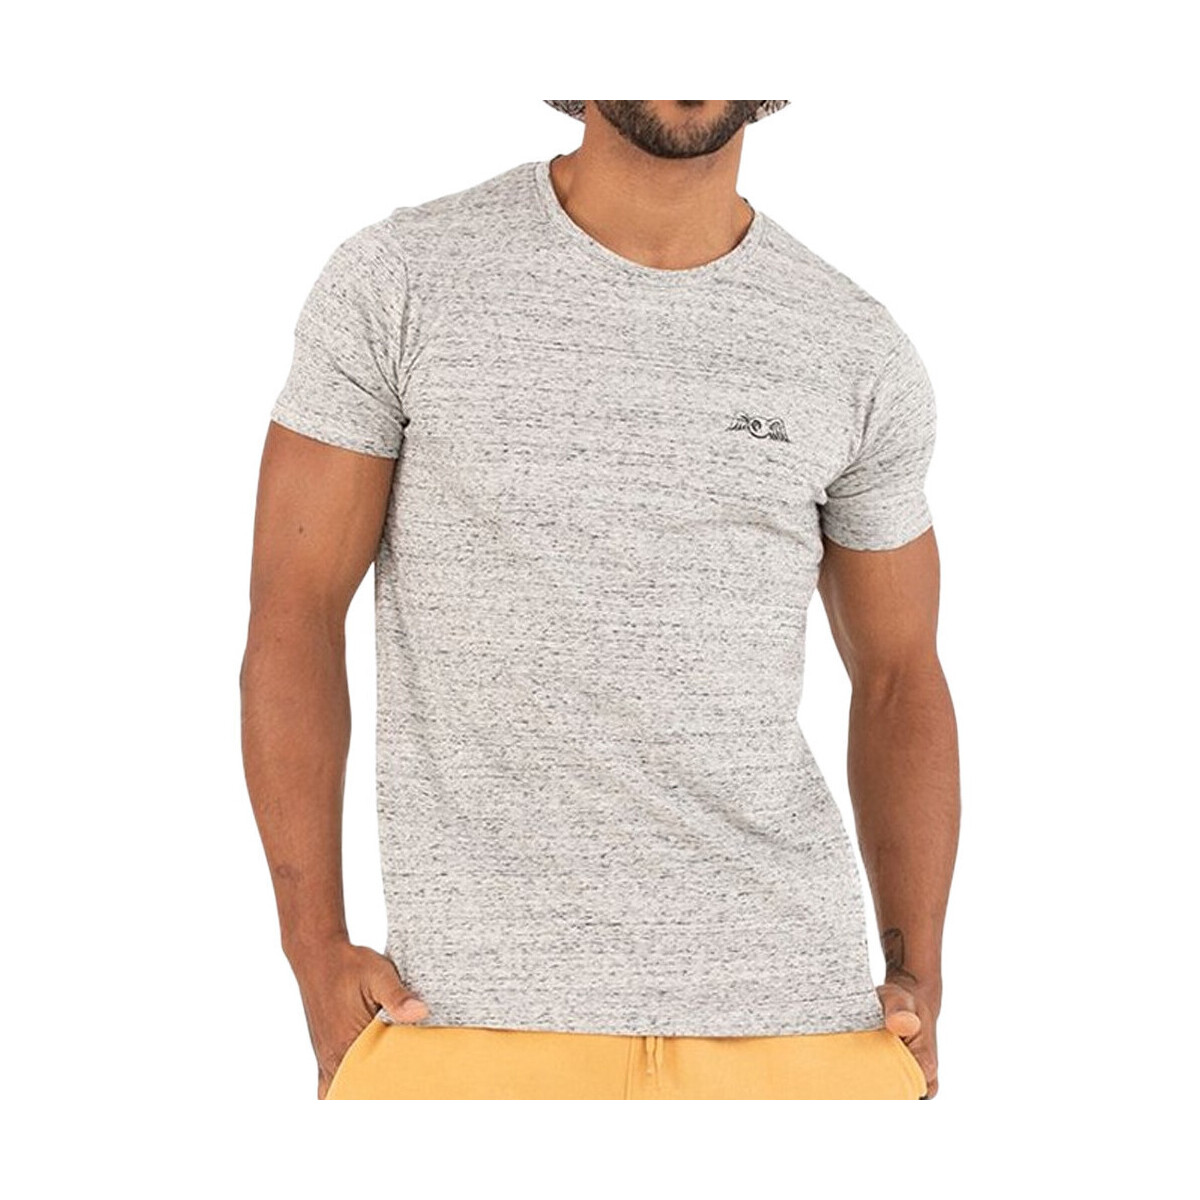 Vêtements Homme Sweatshirt Reverse Weave Von Dutch VD/TRC/SHAVE Blanc